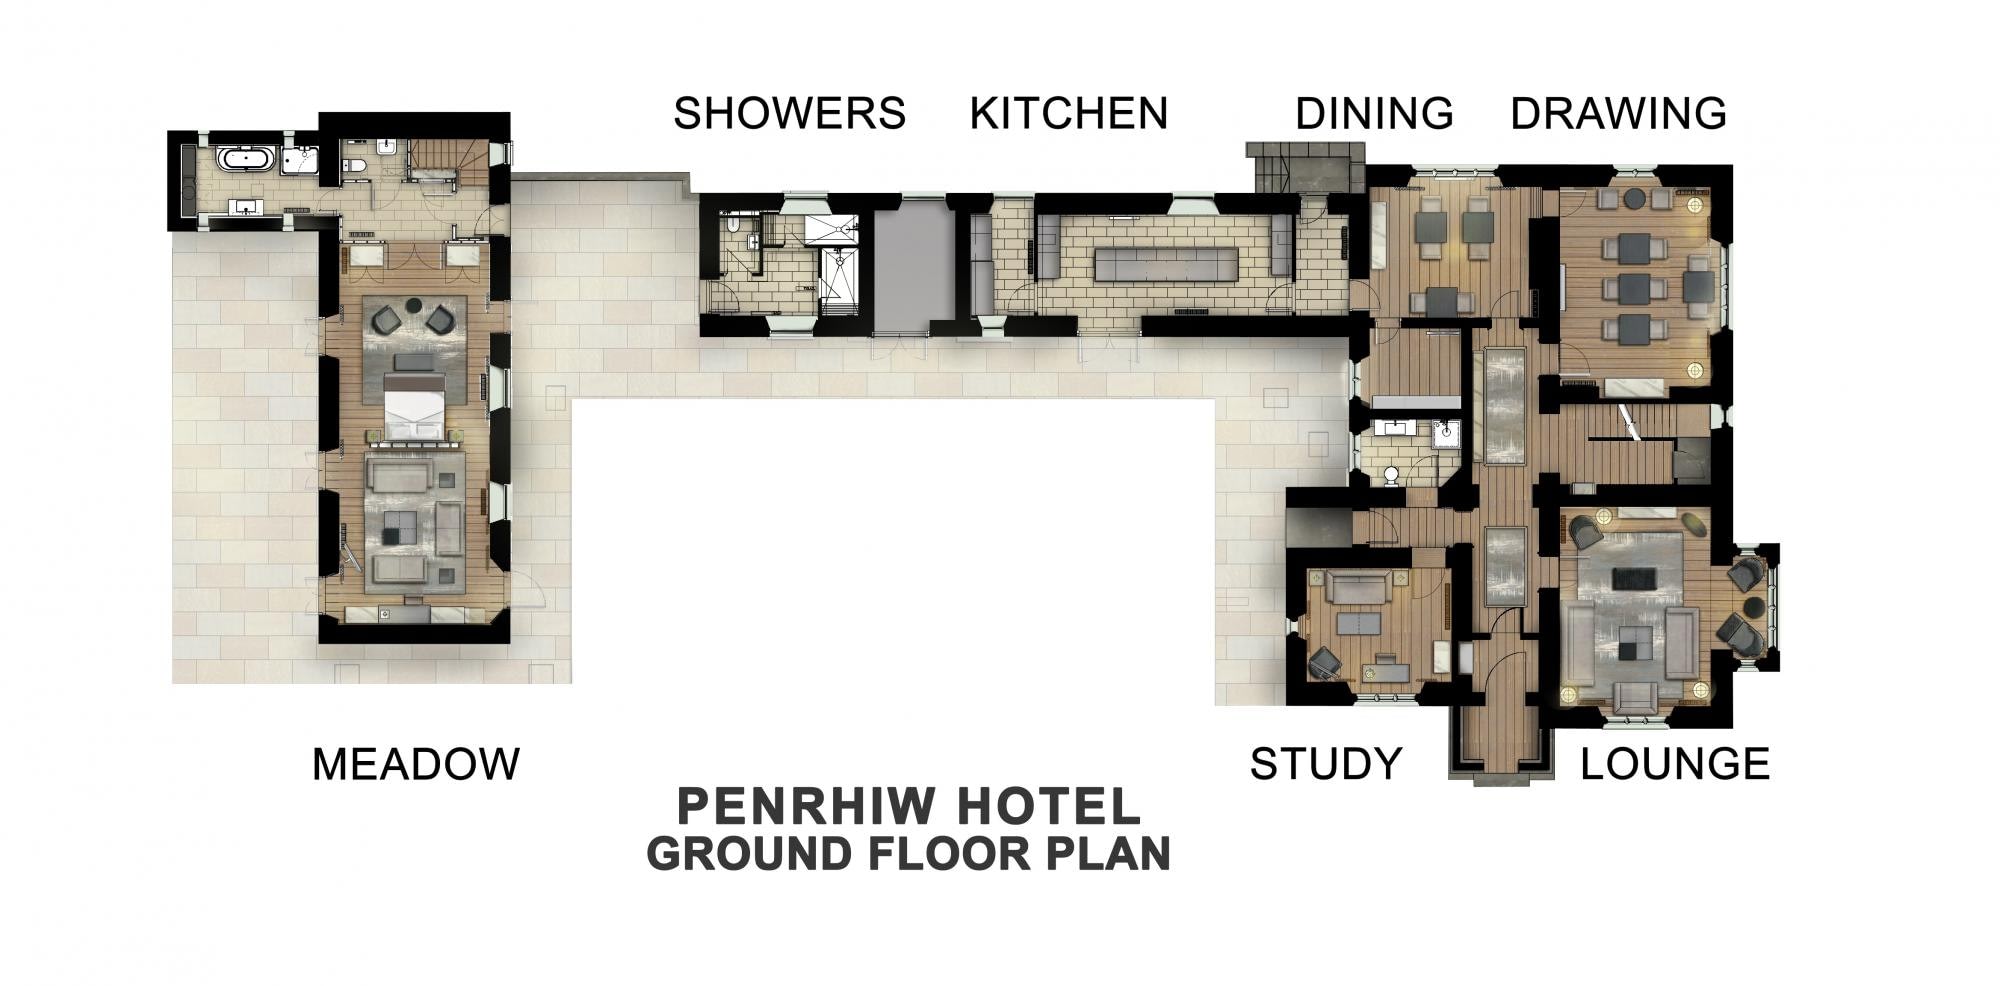 penrhiw priory ground floor